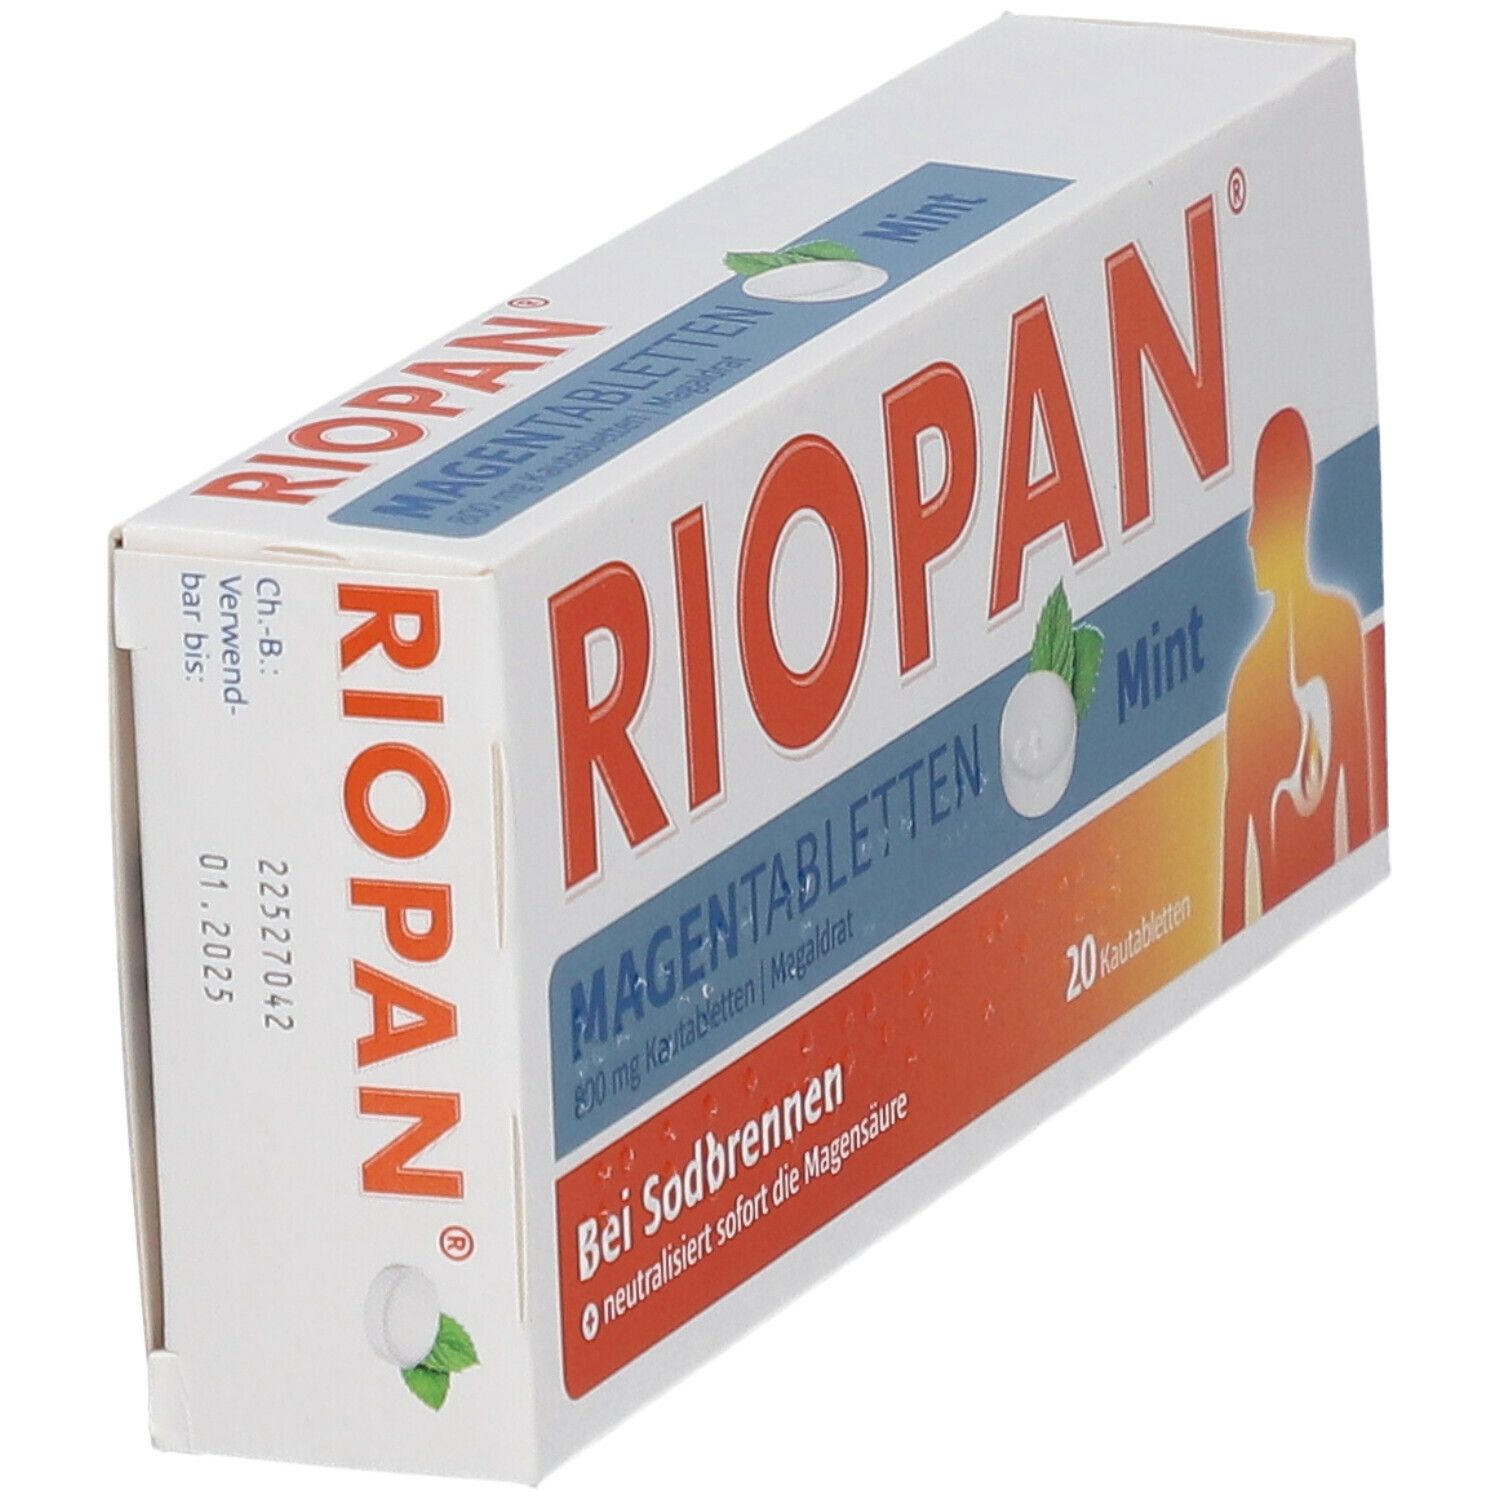 RIOPAN® MAGEN TABLETTEN Mint